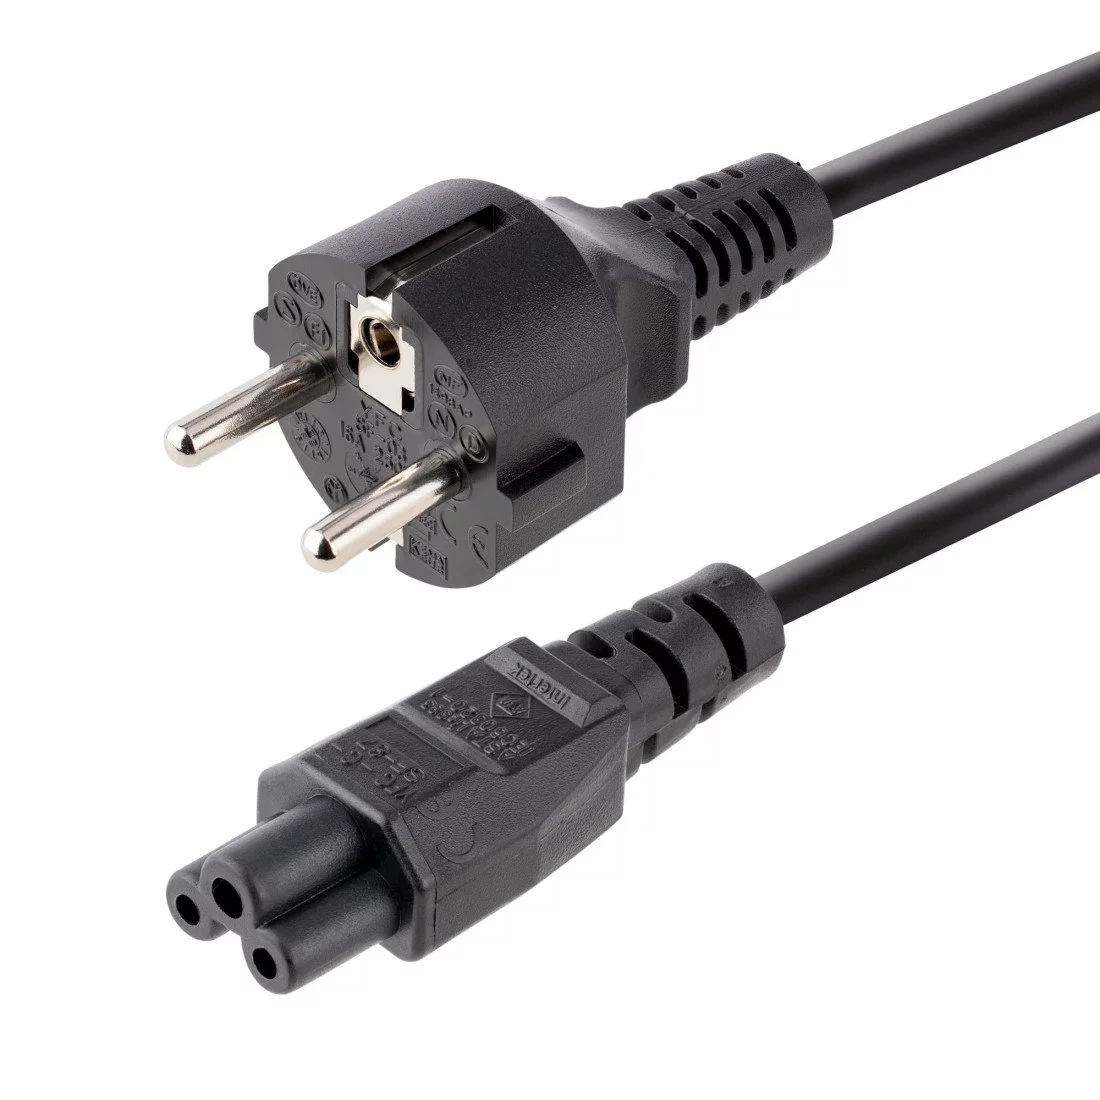 Cable Matters Lot de 2 Cable Alimentation PC à 3 Broches de 2 m, câble d